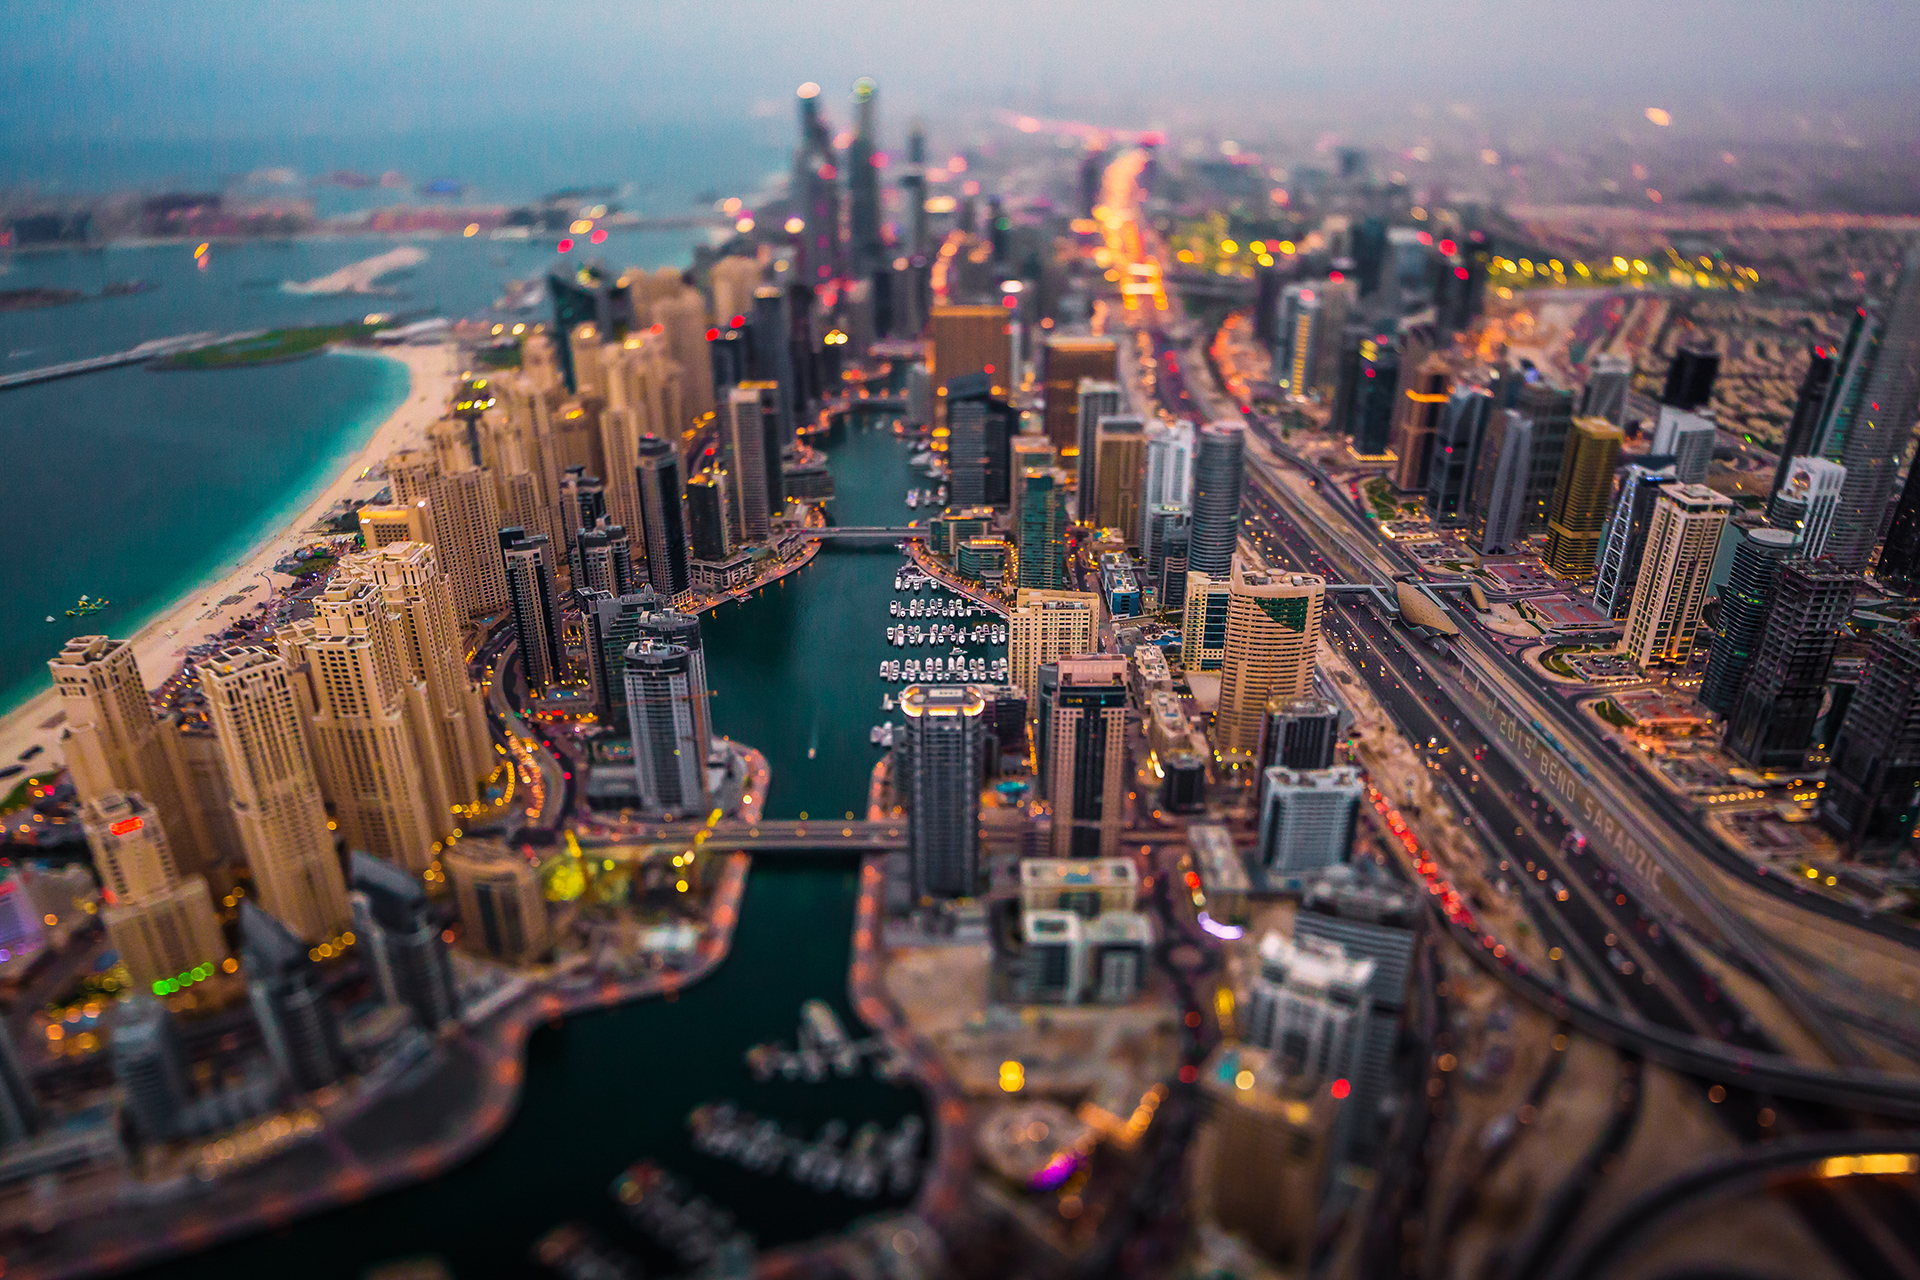 Descarga gratuita de fondo de pantalla para móvil de Ciudad, Rascacielos, Edificio, Paisaje Urbano, Fotografía, Emiratos Árabes Unidos, Dubái, Desenfocado.